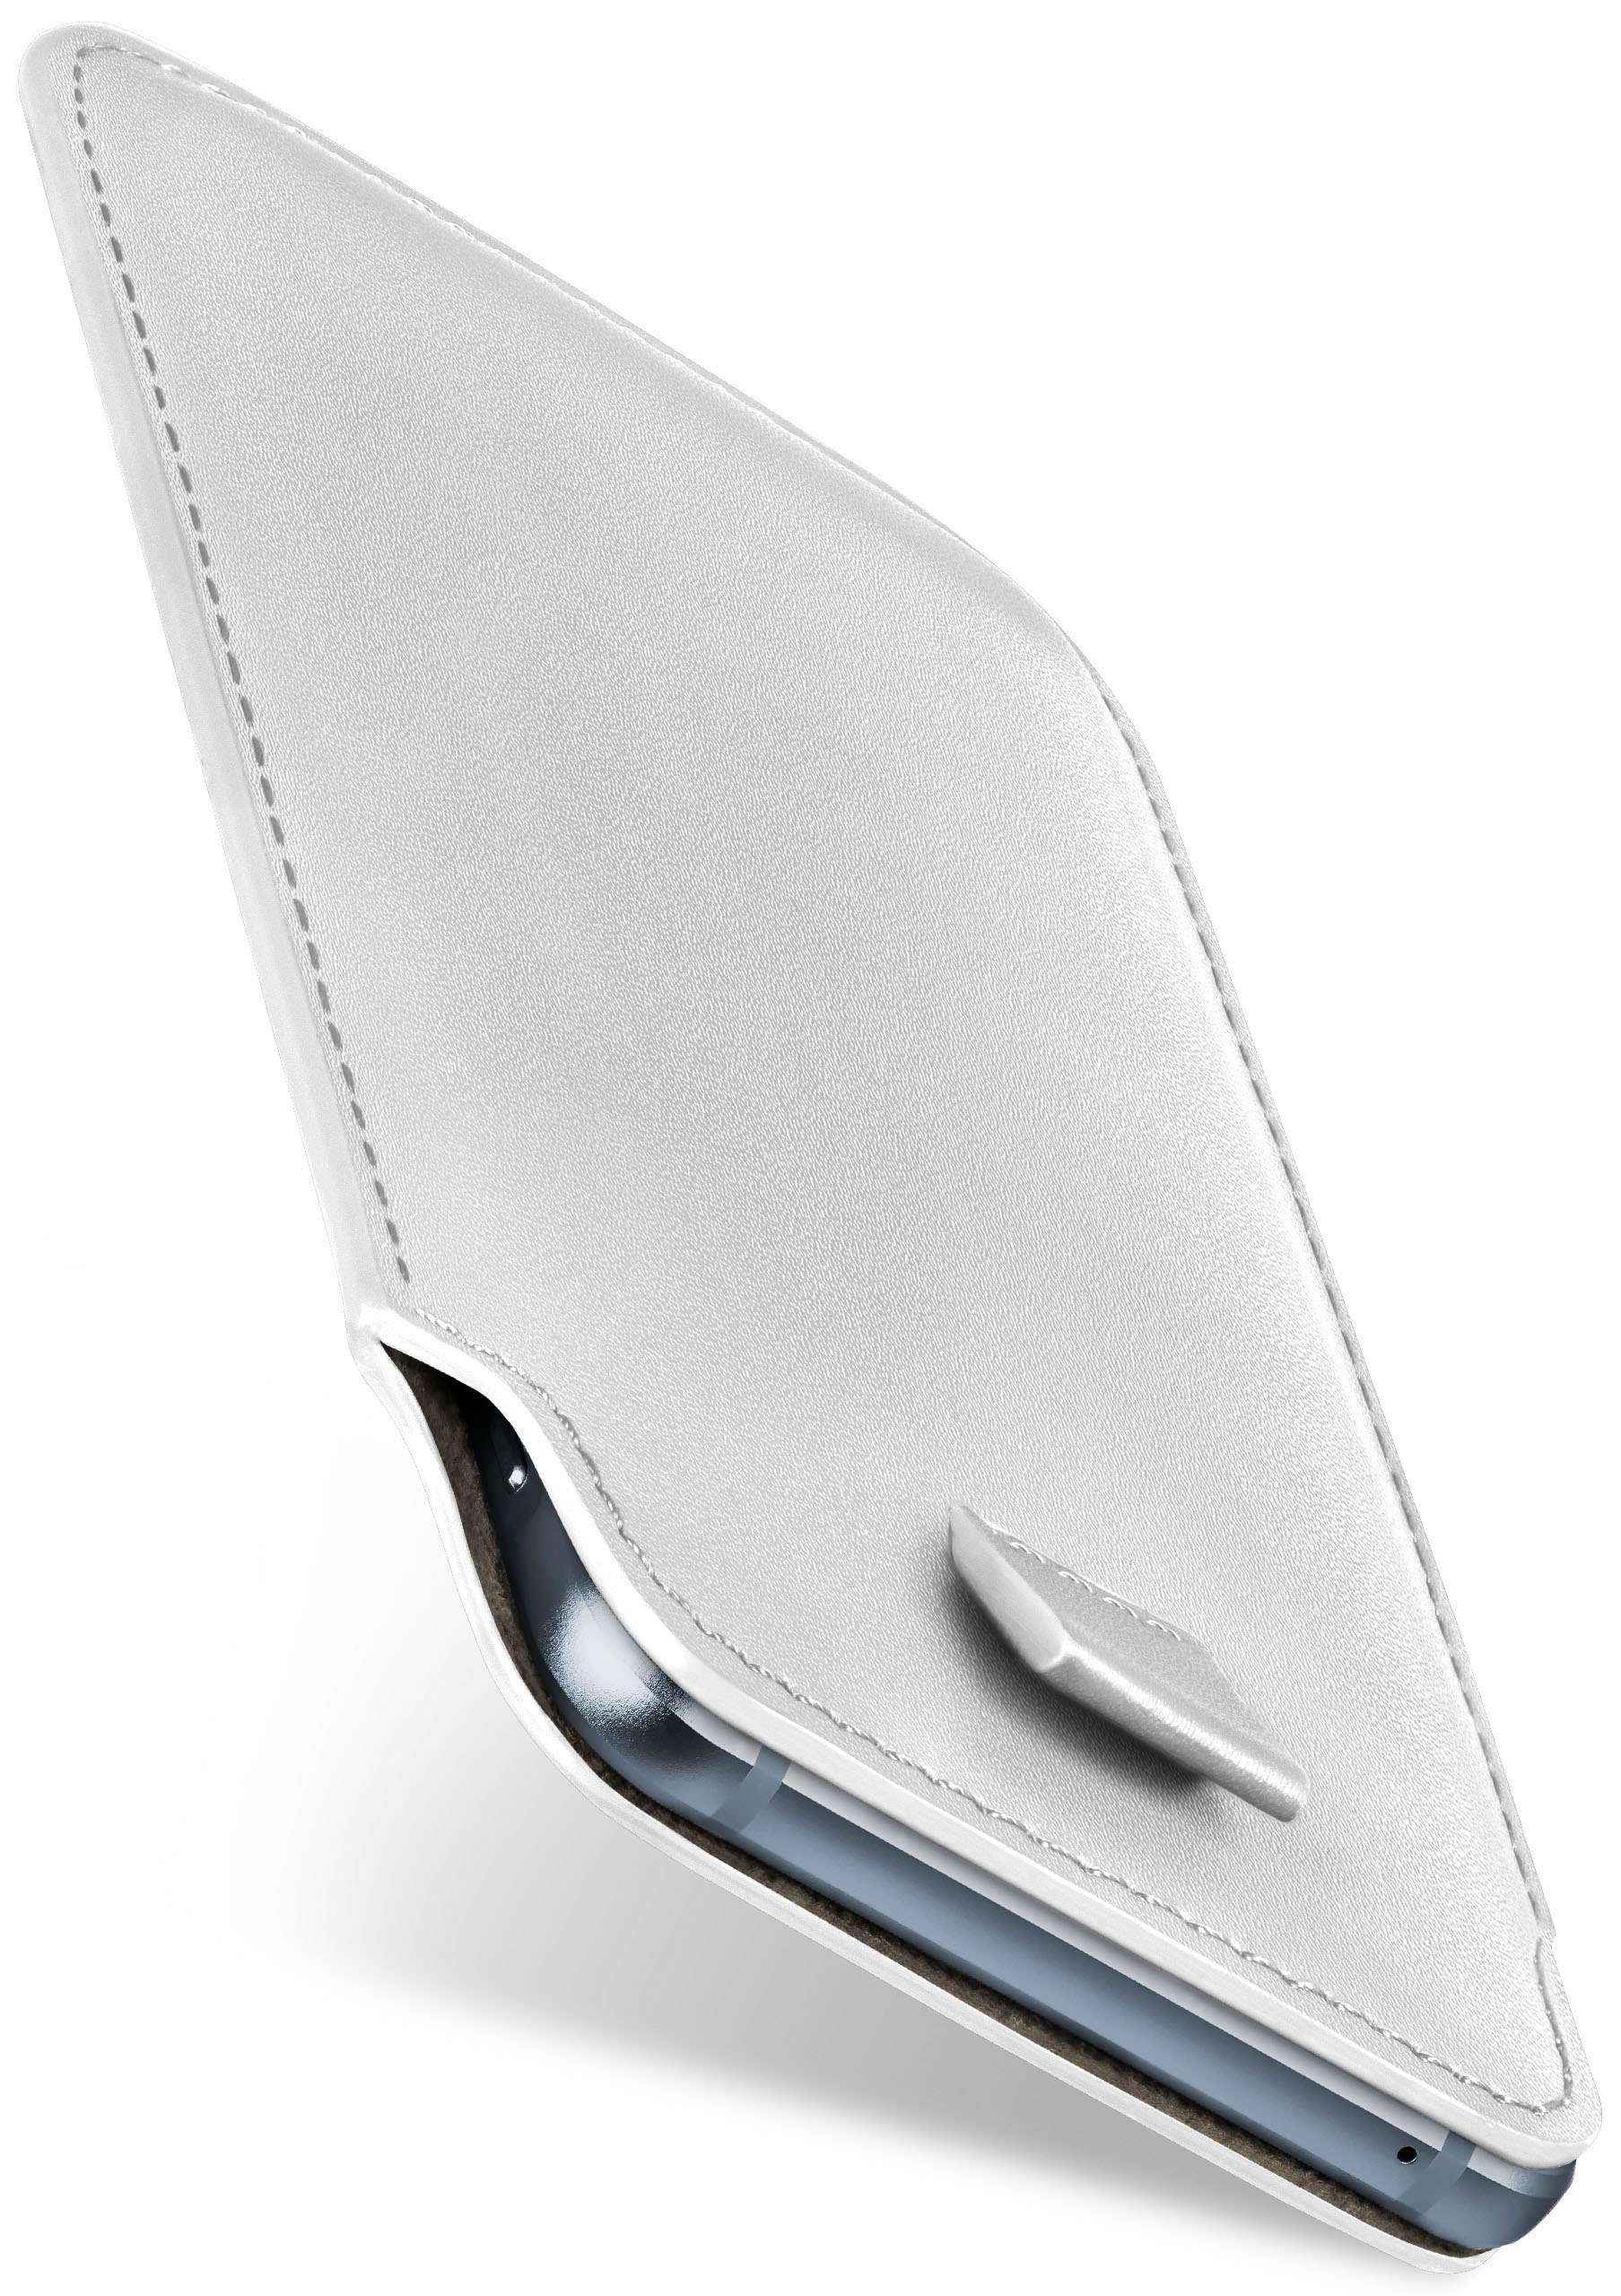 XZ Case, Slide Xperia Premium, MOEX Shiny-White Sony, Cover, Full